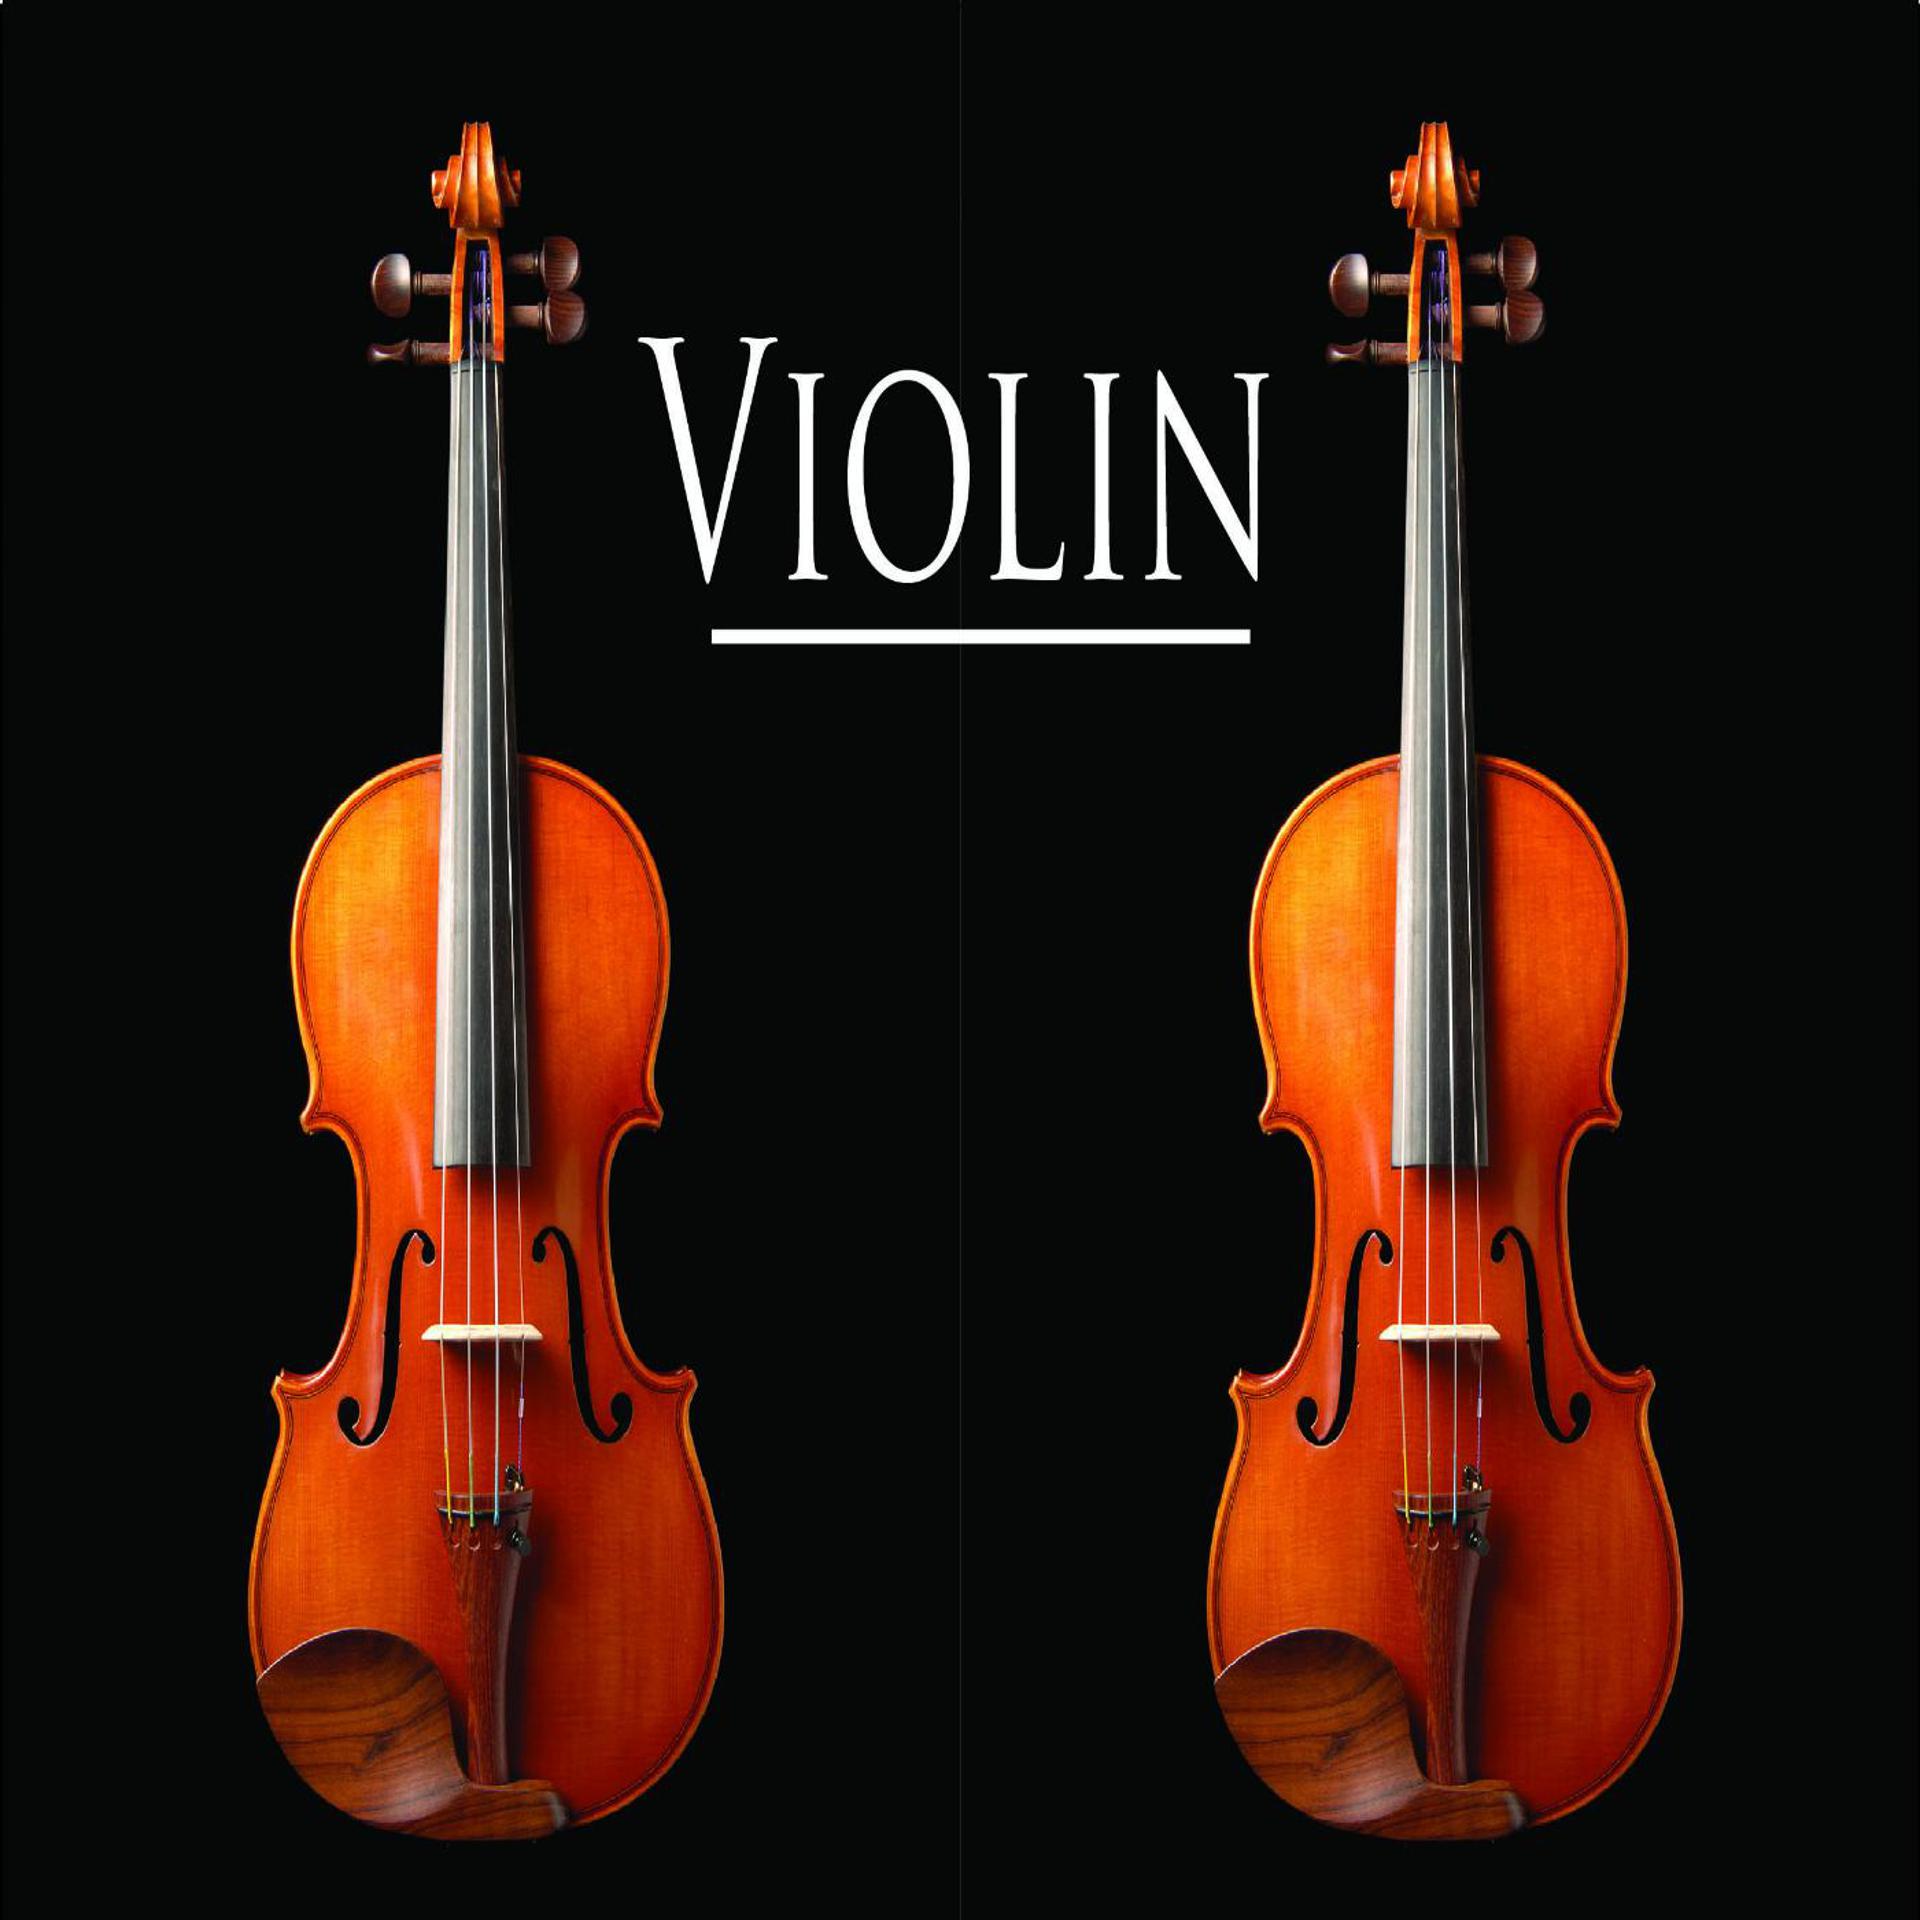 Violin remixes